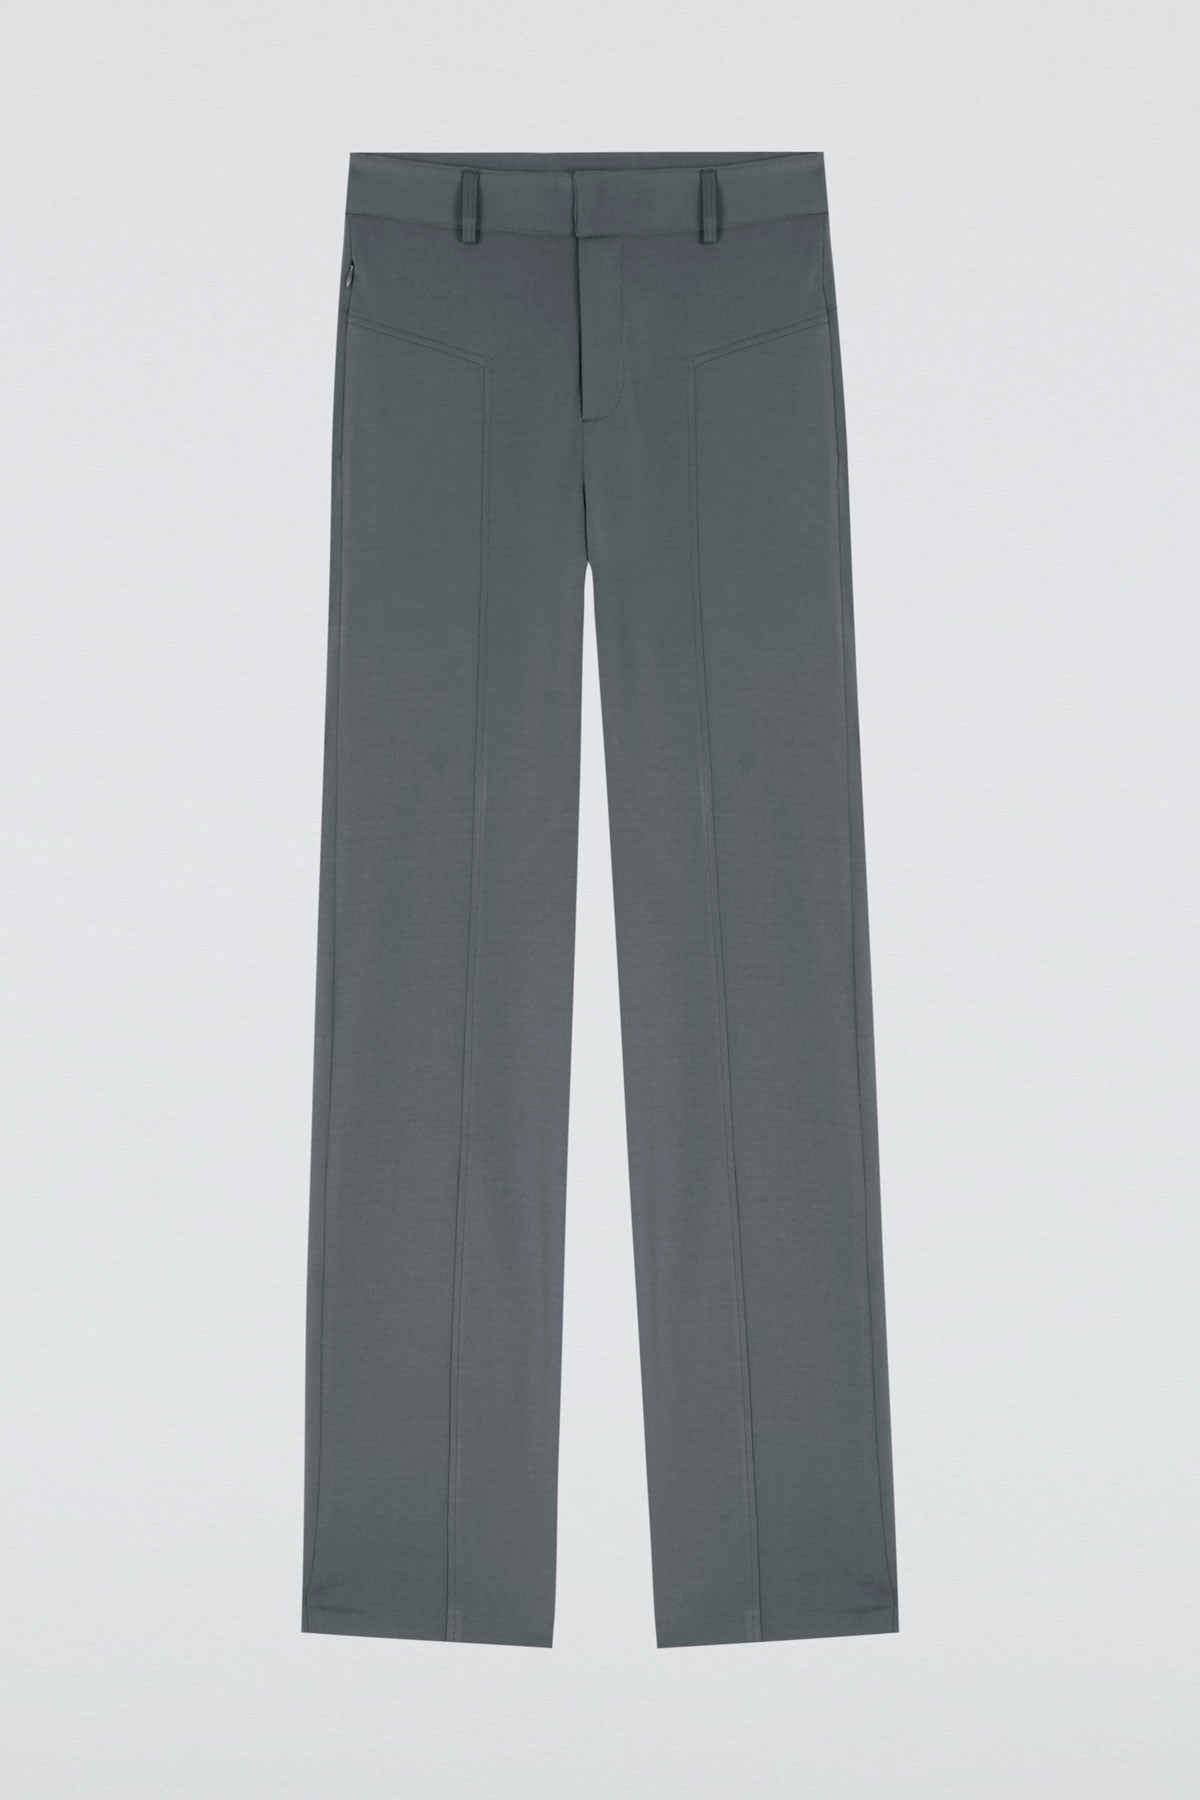 Women's 24/7 trousers grey